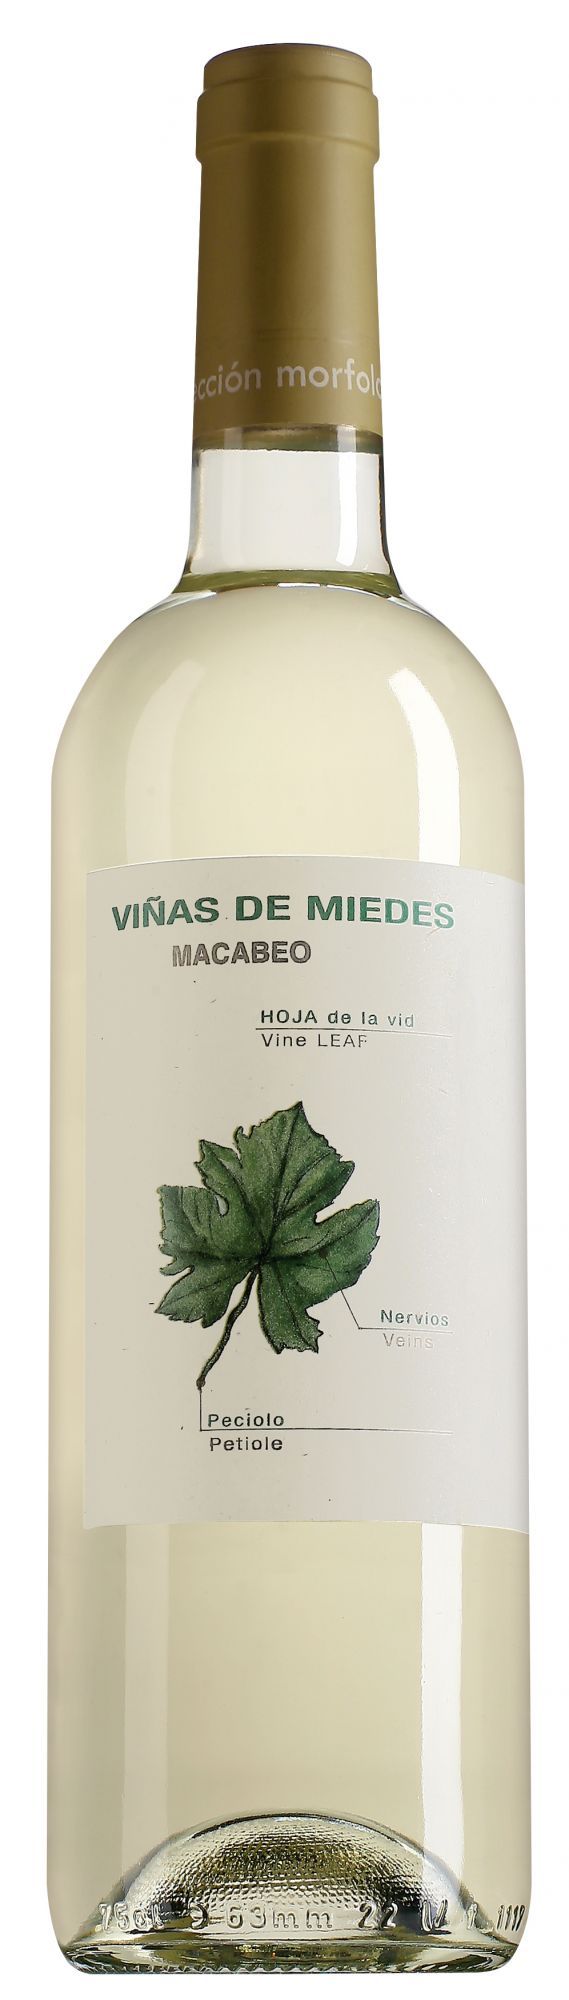 San Alejandro, Vinas De Miedes Macabeo, 2014